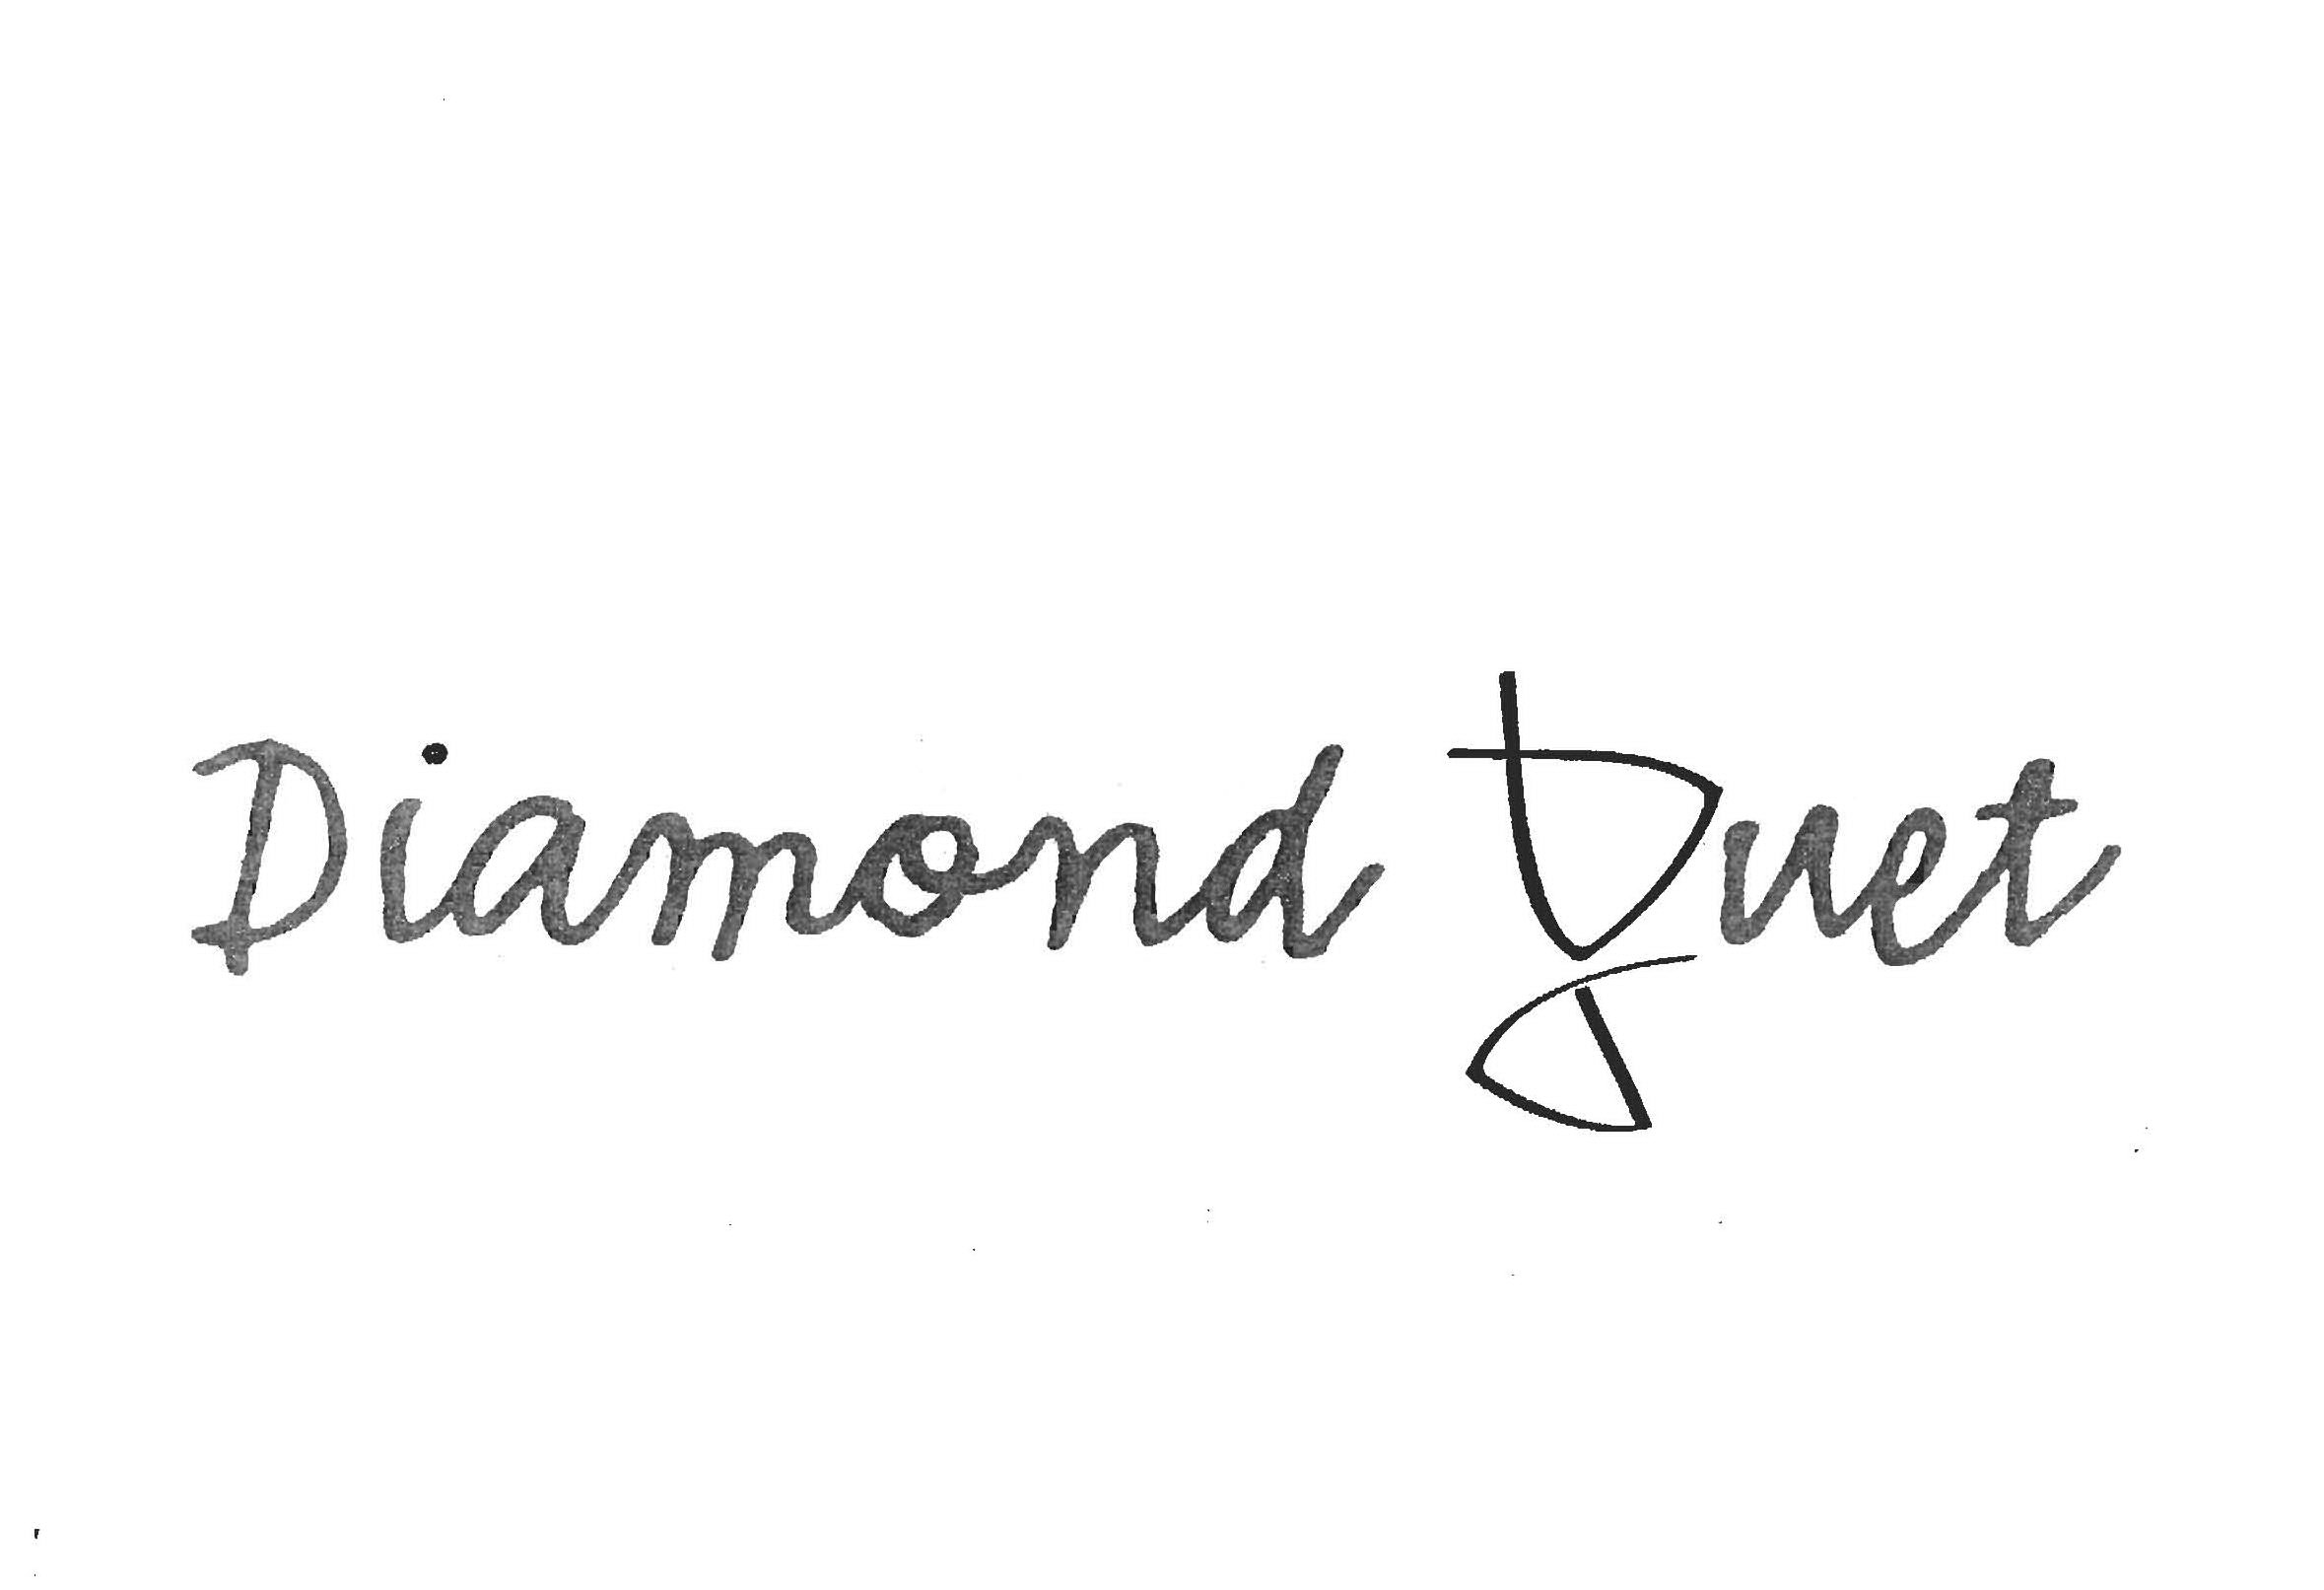  DIAMOND DUET